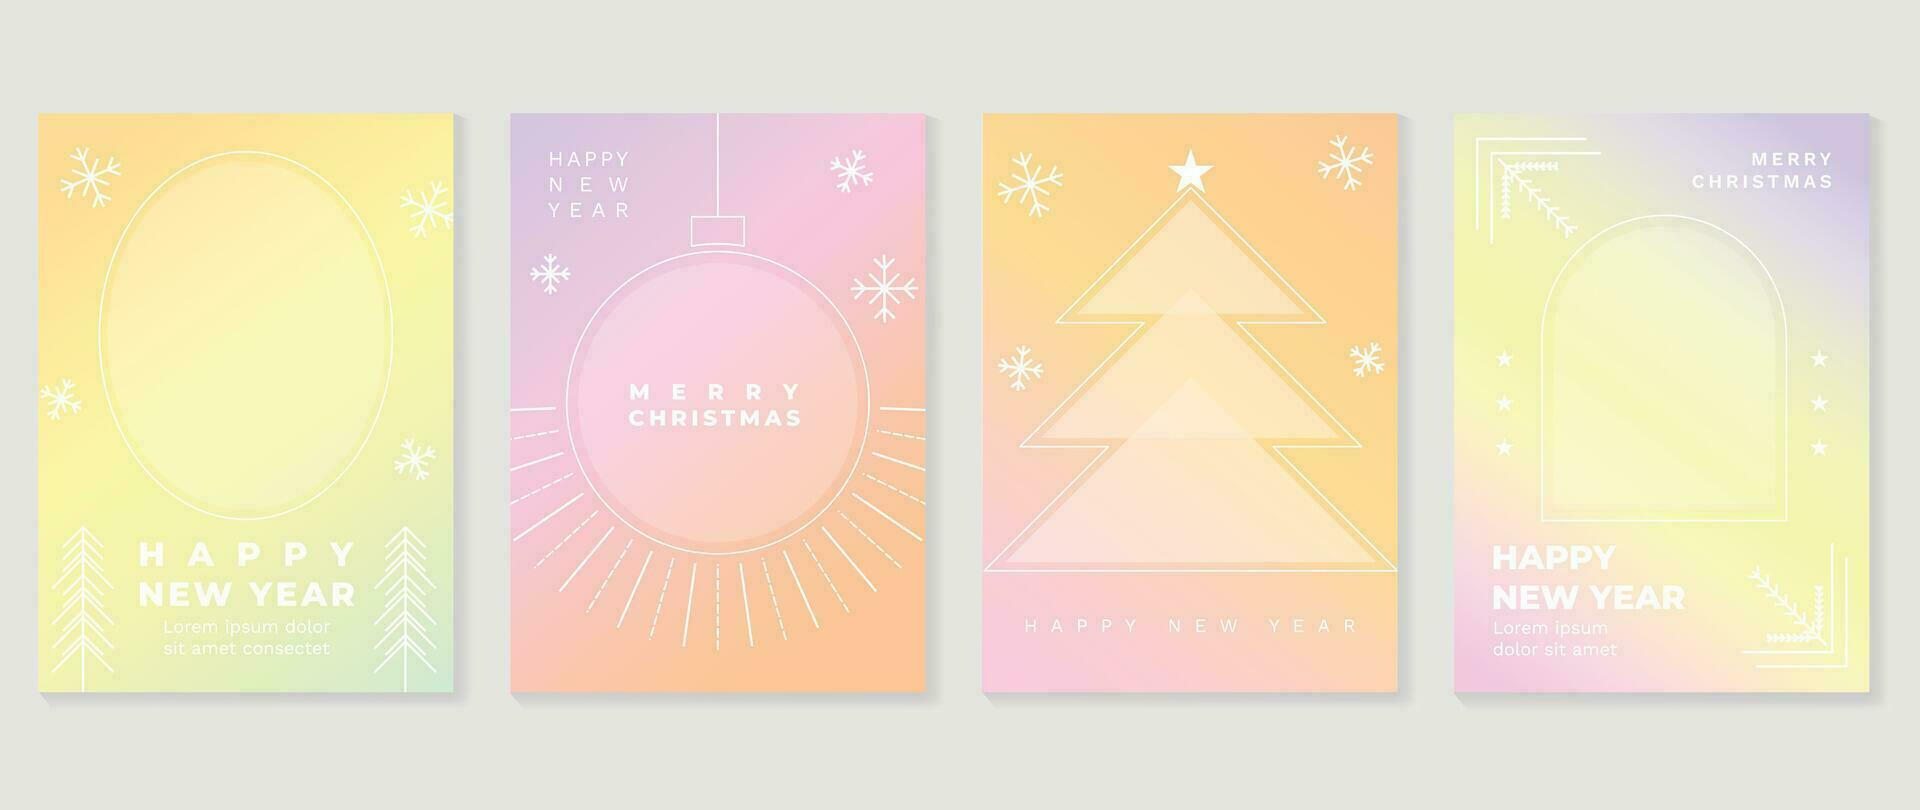 vrolijk Kerstmis concept posters set. schattig helling holografische achtergrond vector met pastel kleur, sneeuwvlokken, pijnboom, bal, ster. kunst modieus behang ontwerp voor sociaal media, kaart, banier, folder.